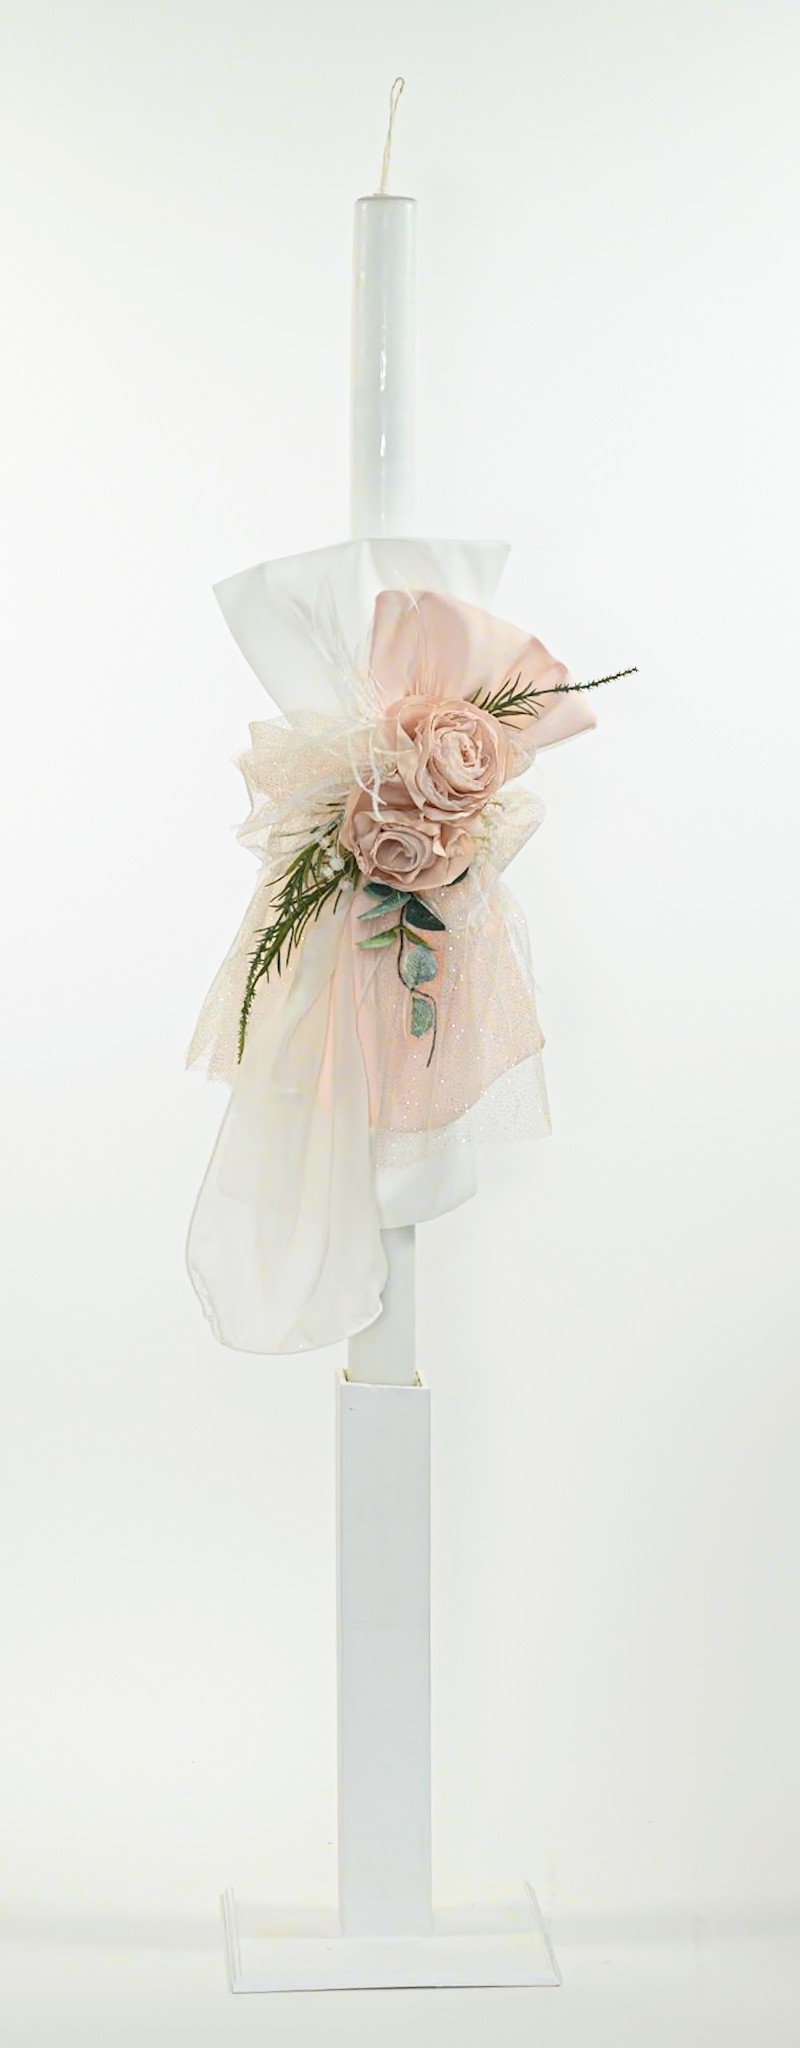 Λαμπάδα σε off white & ροζ αποχρώσεις με λουλούδια - Λαμπάδα βάπτισης για κορίτσι